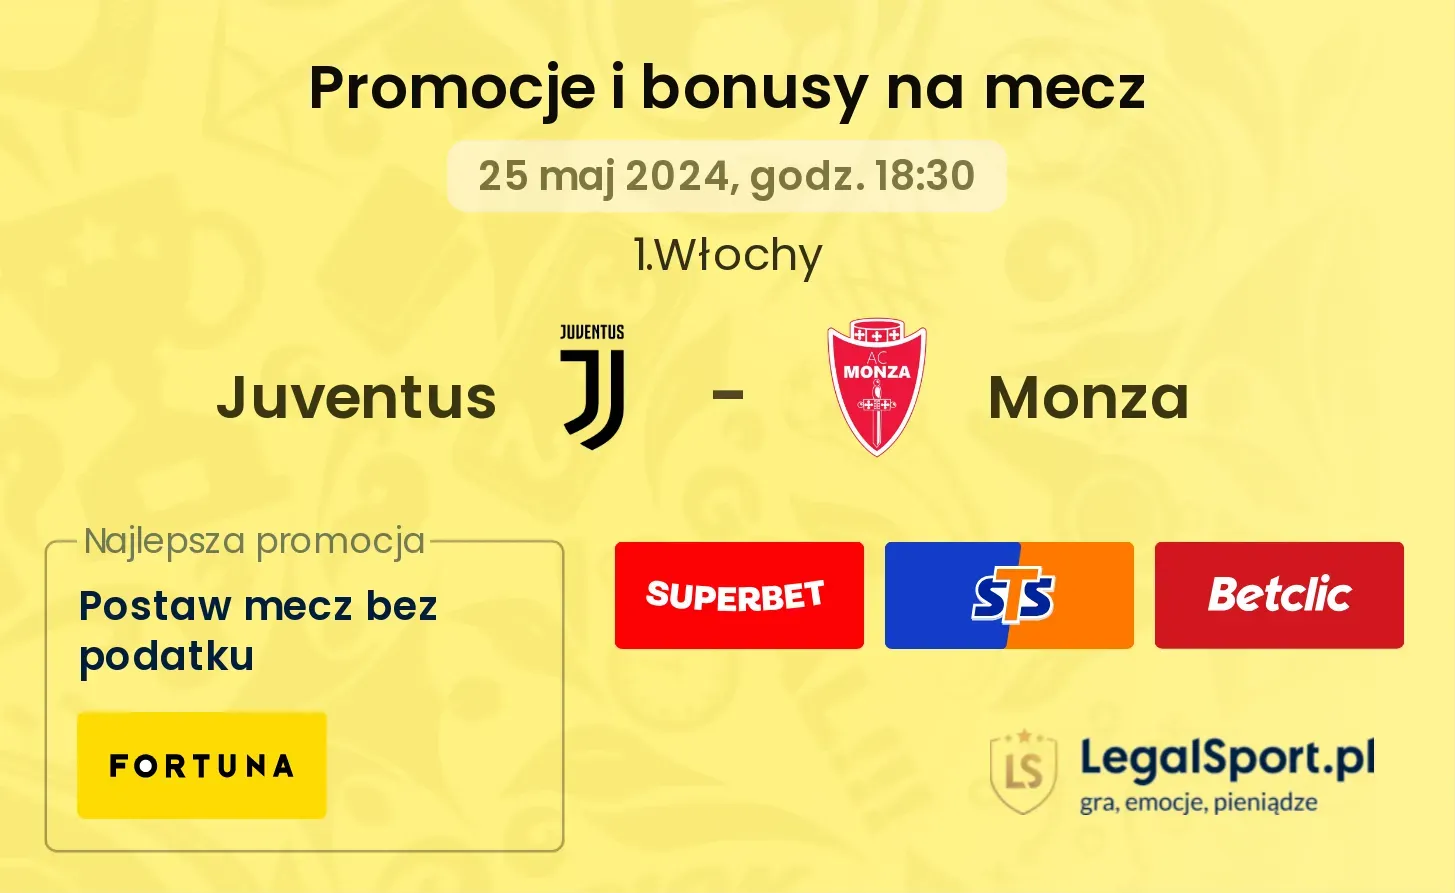 Juventus - Monza bonusy i promocje (25.05, 18:30)